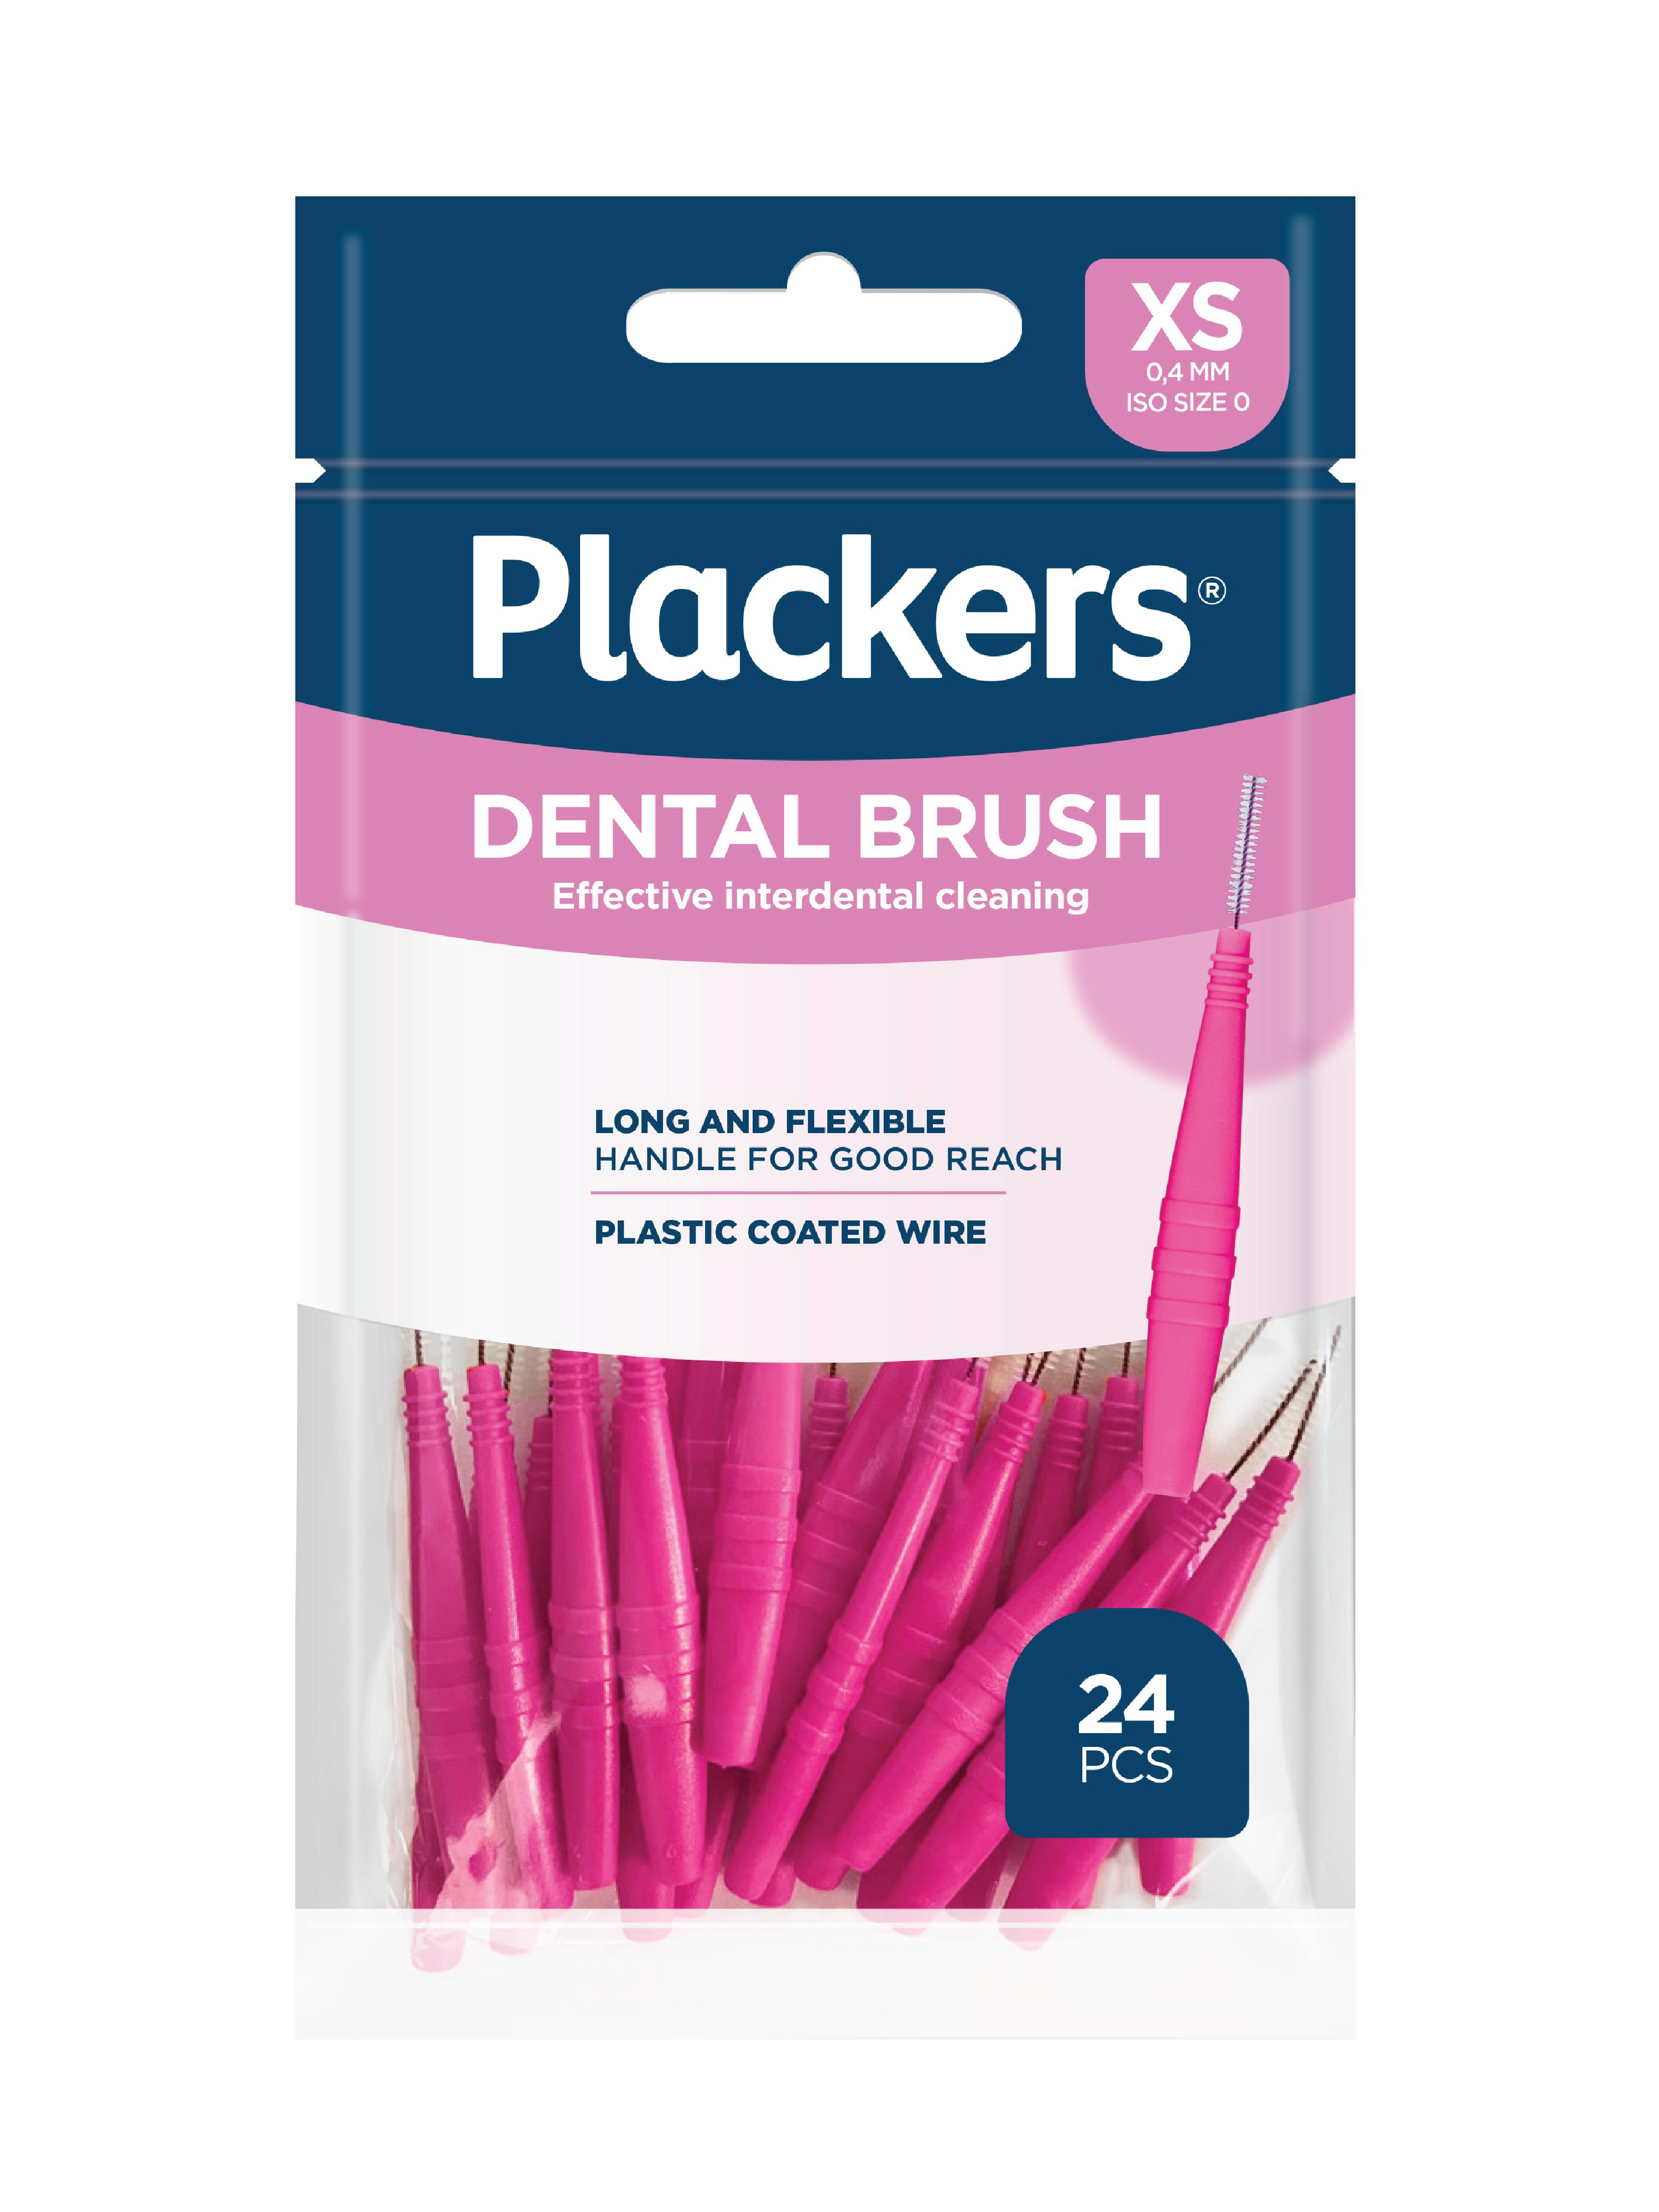 Dental Brush rosa mellomromsbørste 0,4 mm XS, 24 stk